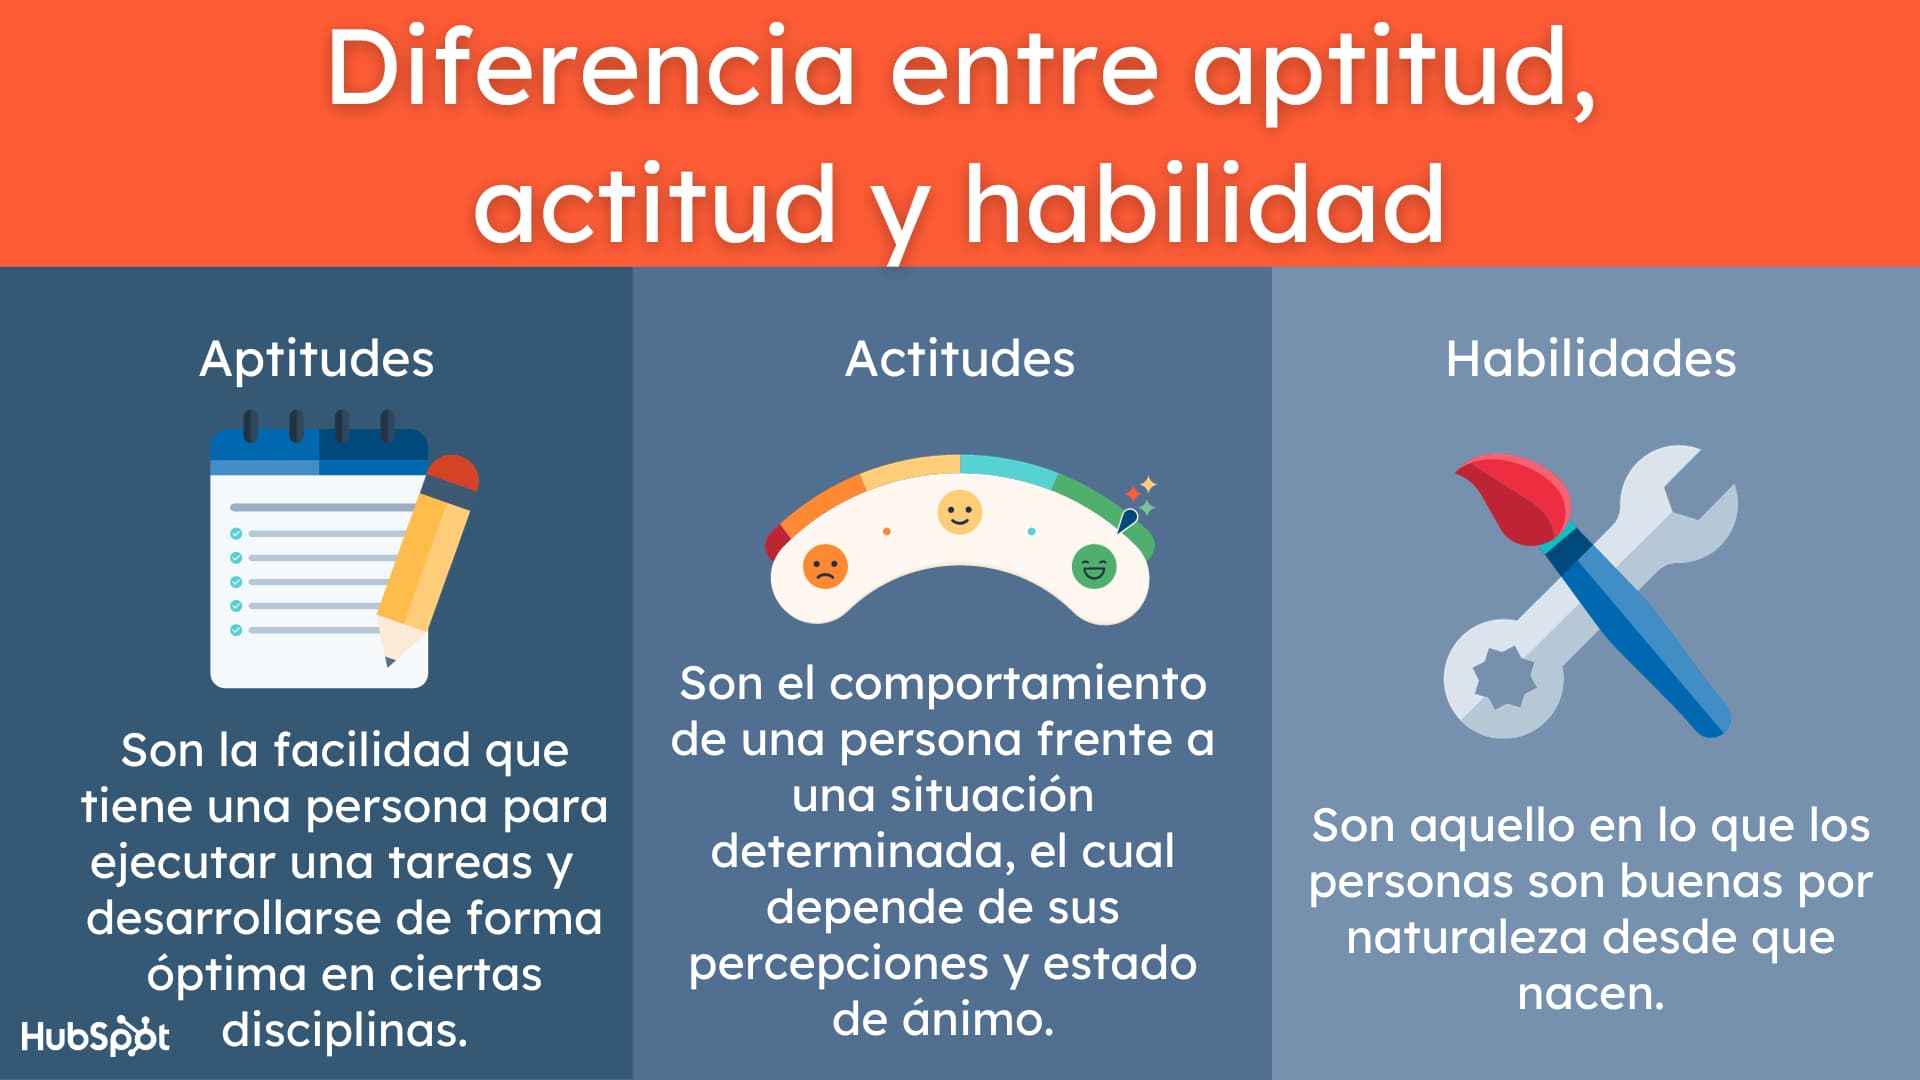 Infografía sobre la diferencia entre aptitud-actitud y habilidad